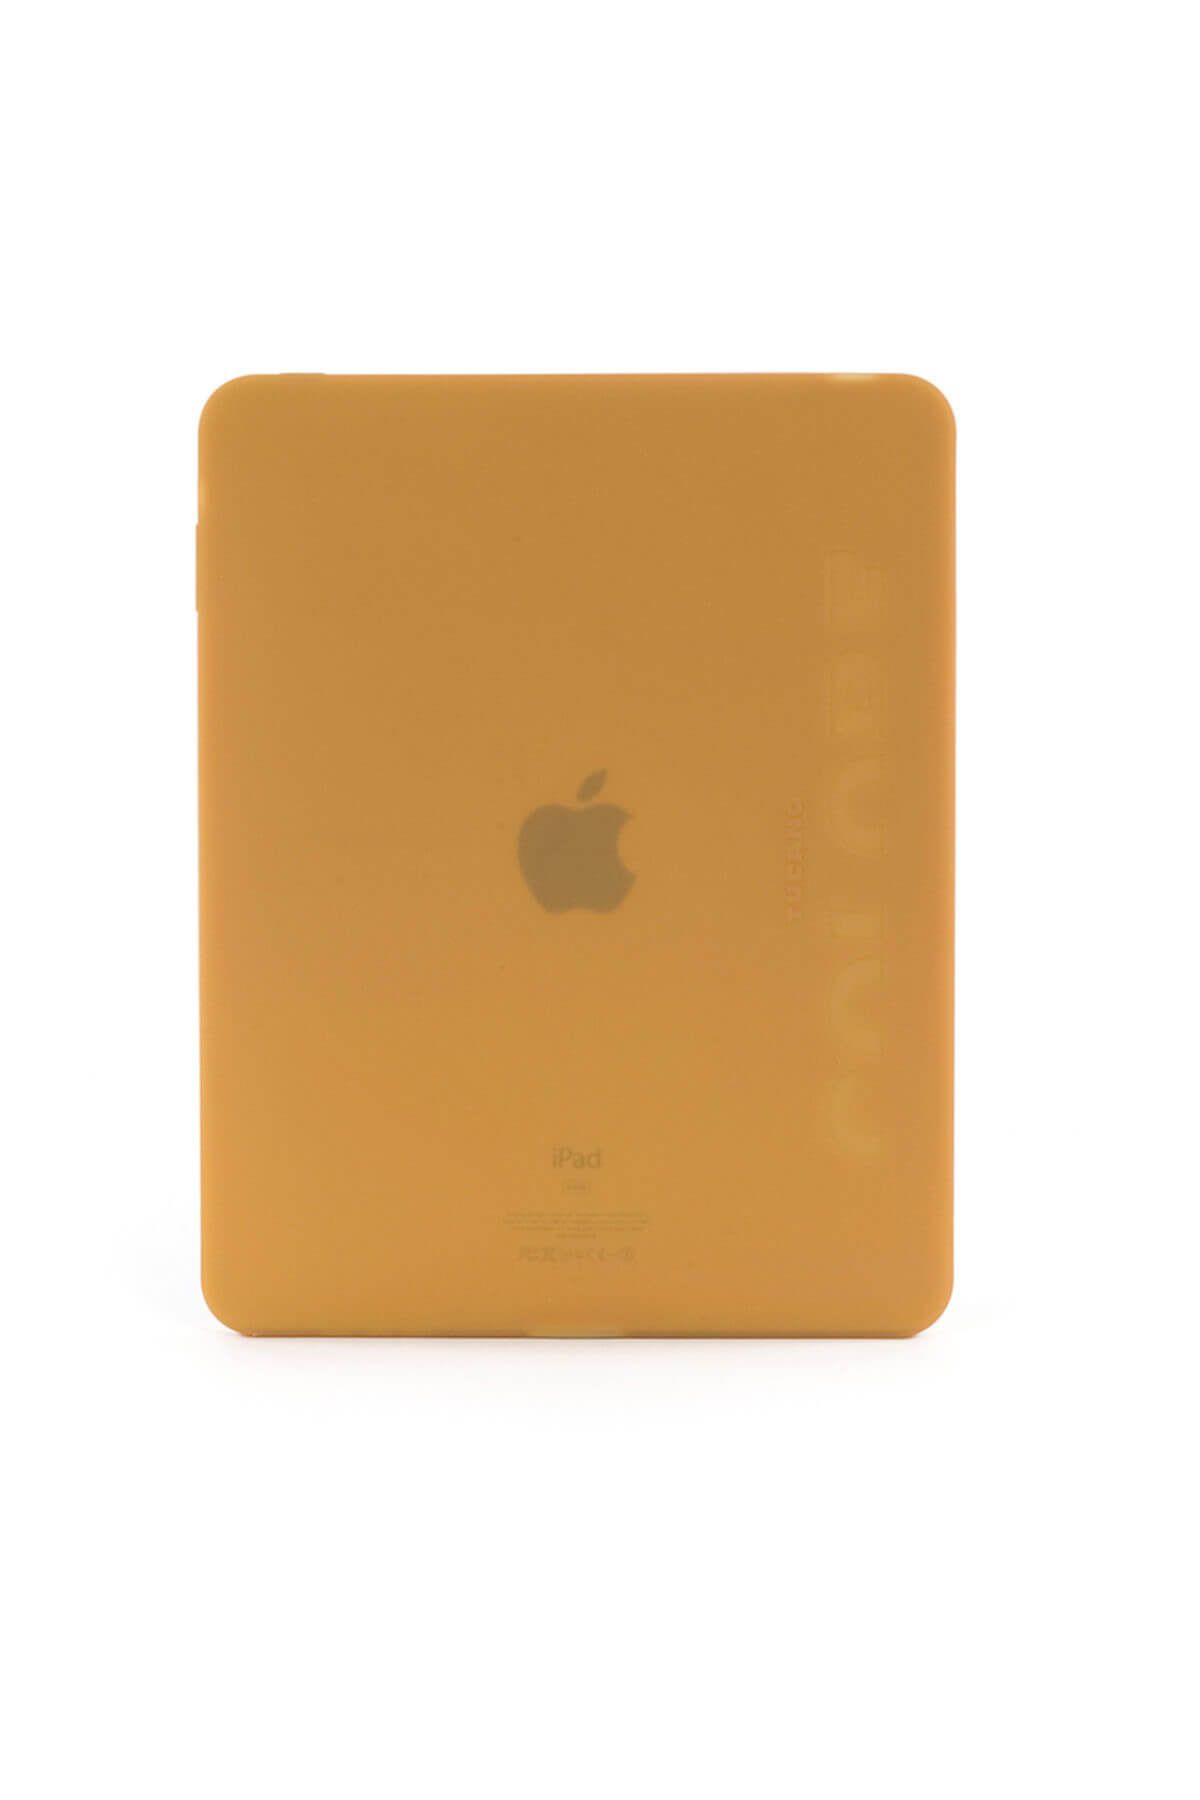 Tucano IPDCS-O Colore iPad 1 ile Uyumlu Silikon Tablet Kılıfı Turuncu